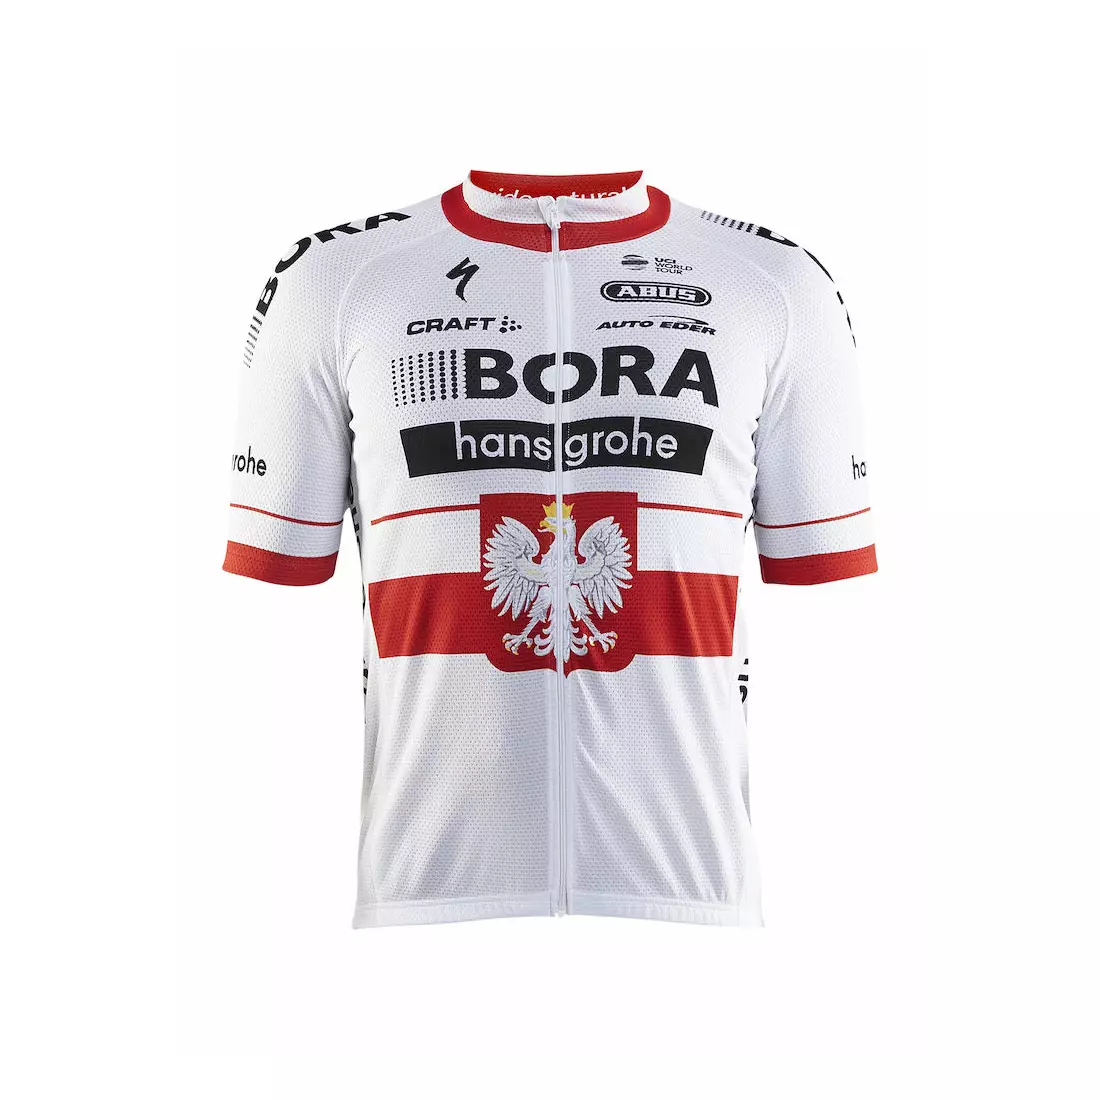 CRAFT BORA hansgrohe lengyel bajnok kerékpáros mez 1906104-2430